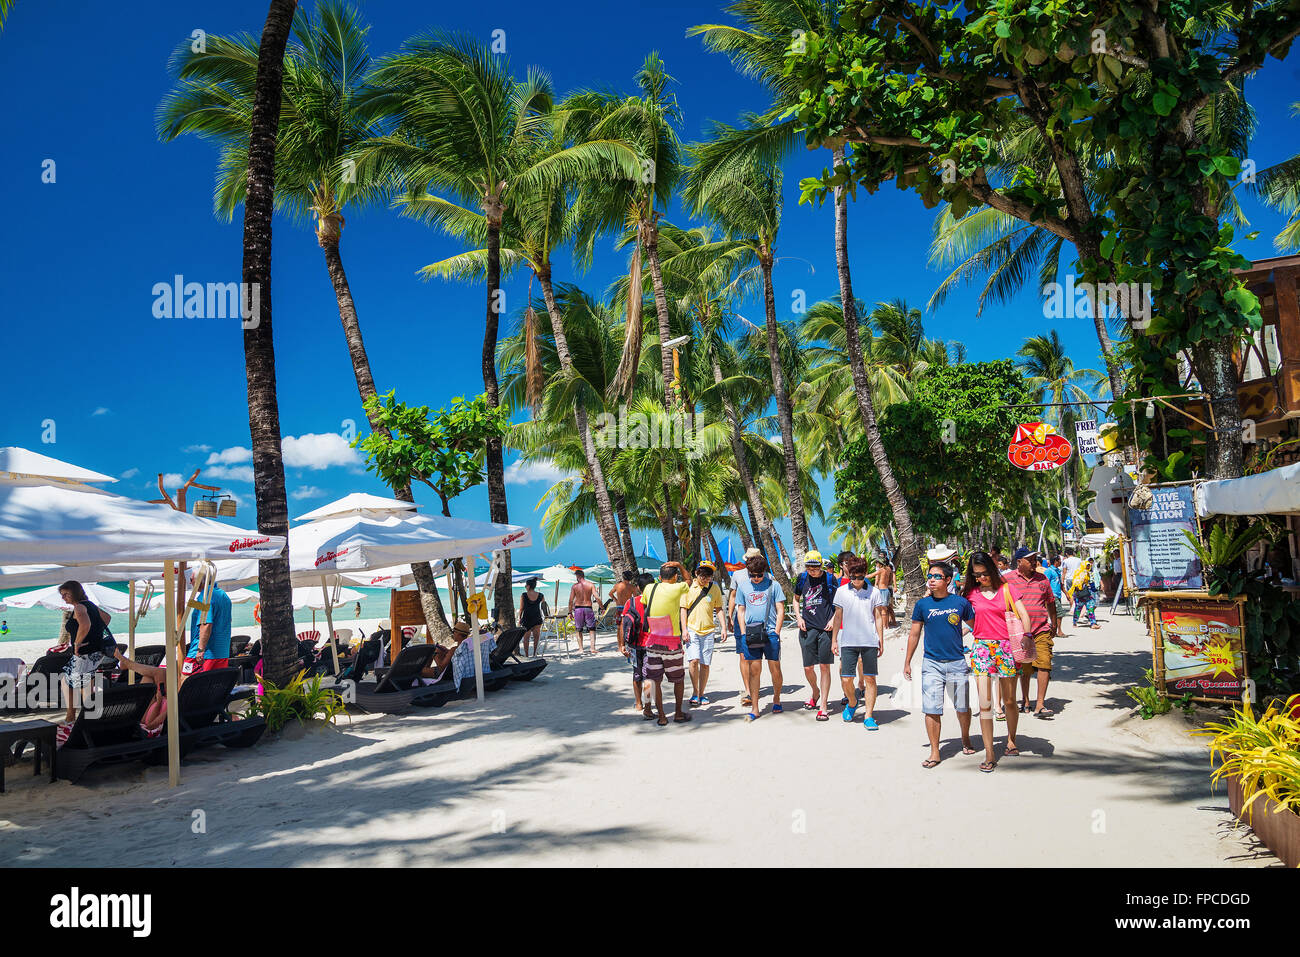 Les touristes sur la plage principale de la station 2, rue Boutique restaurant occupé dans l'île de Boracay philippines Banque D'Images